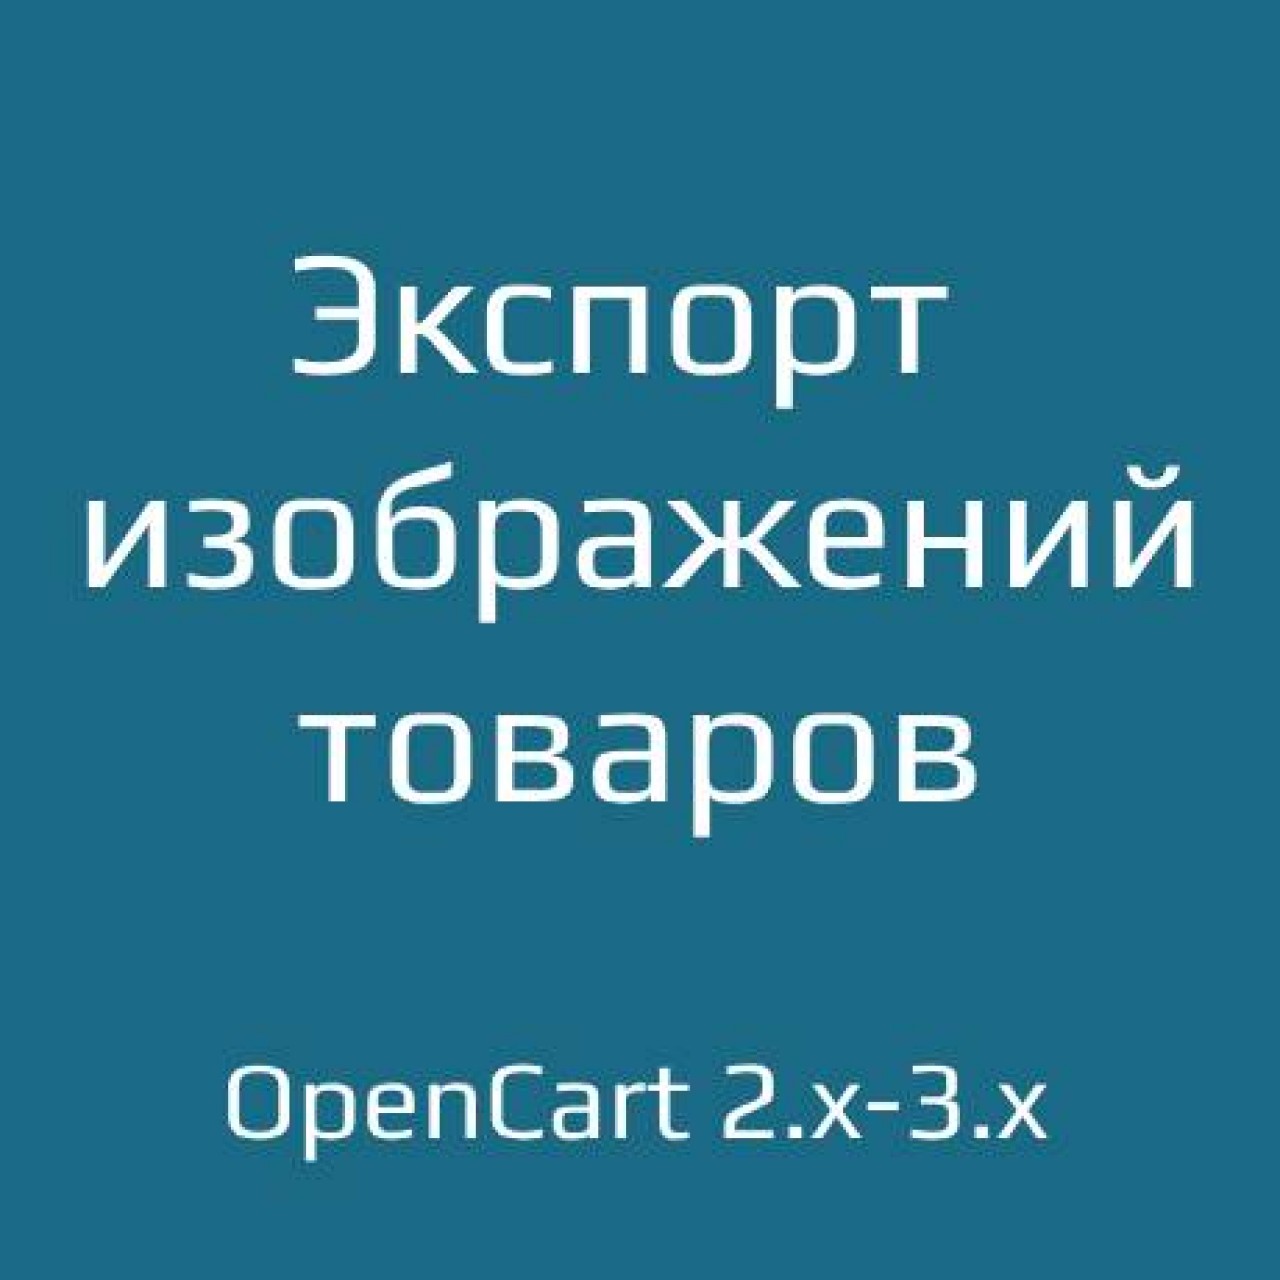 Экспорт изображений товаров из категории Админка для CMS OpenCart (ОпенКарт)